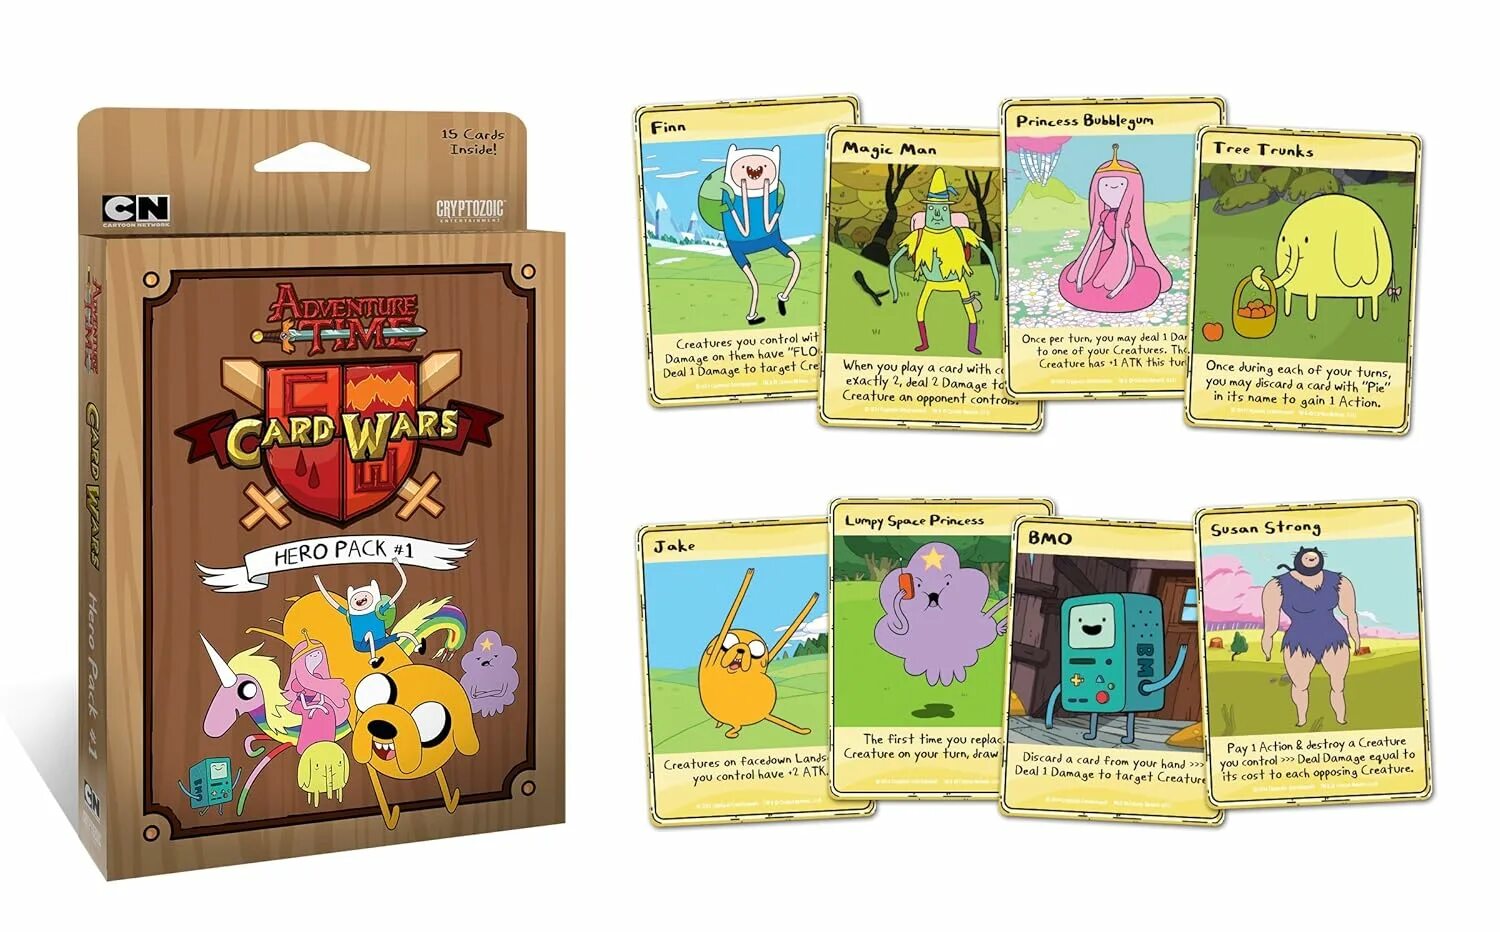 Карточный войны время приключений игры. Игра Adventure time карточные войны. Карточки карточные войны герой Джейк. Adventure time Card Wars: Hero Pack #1. Игра фин и Джейк карточные войны.